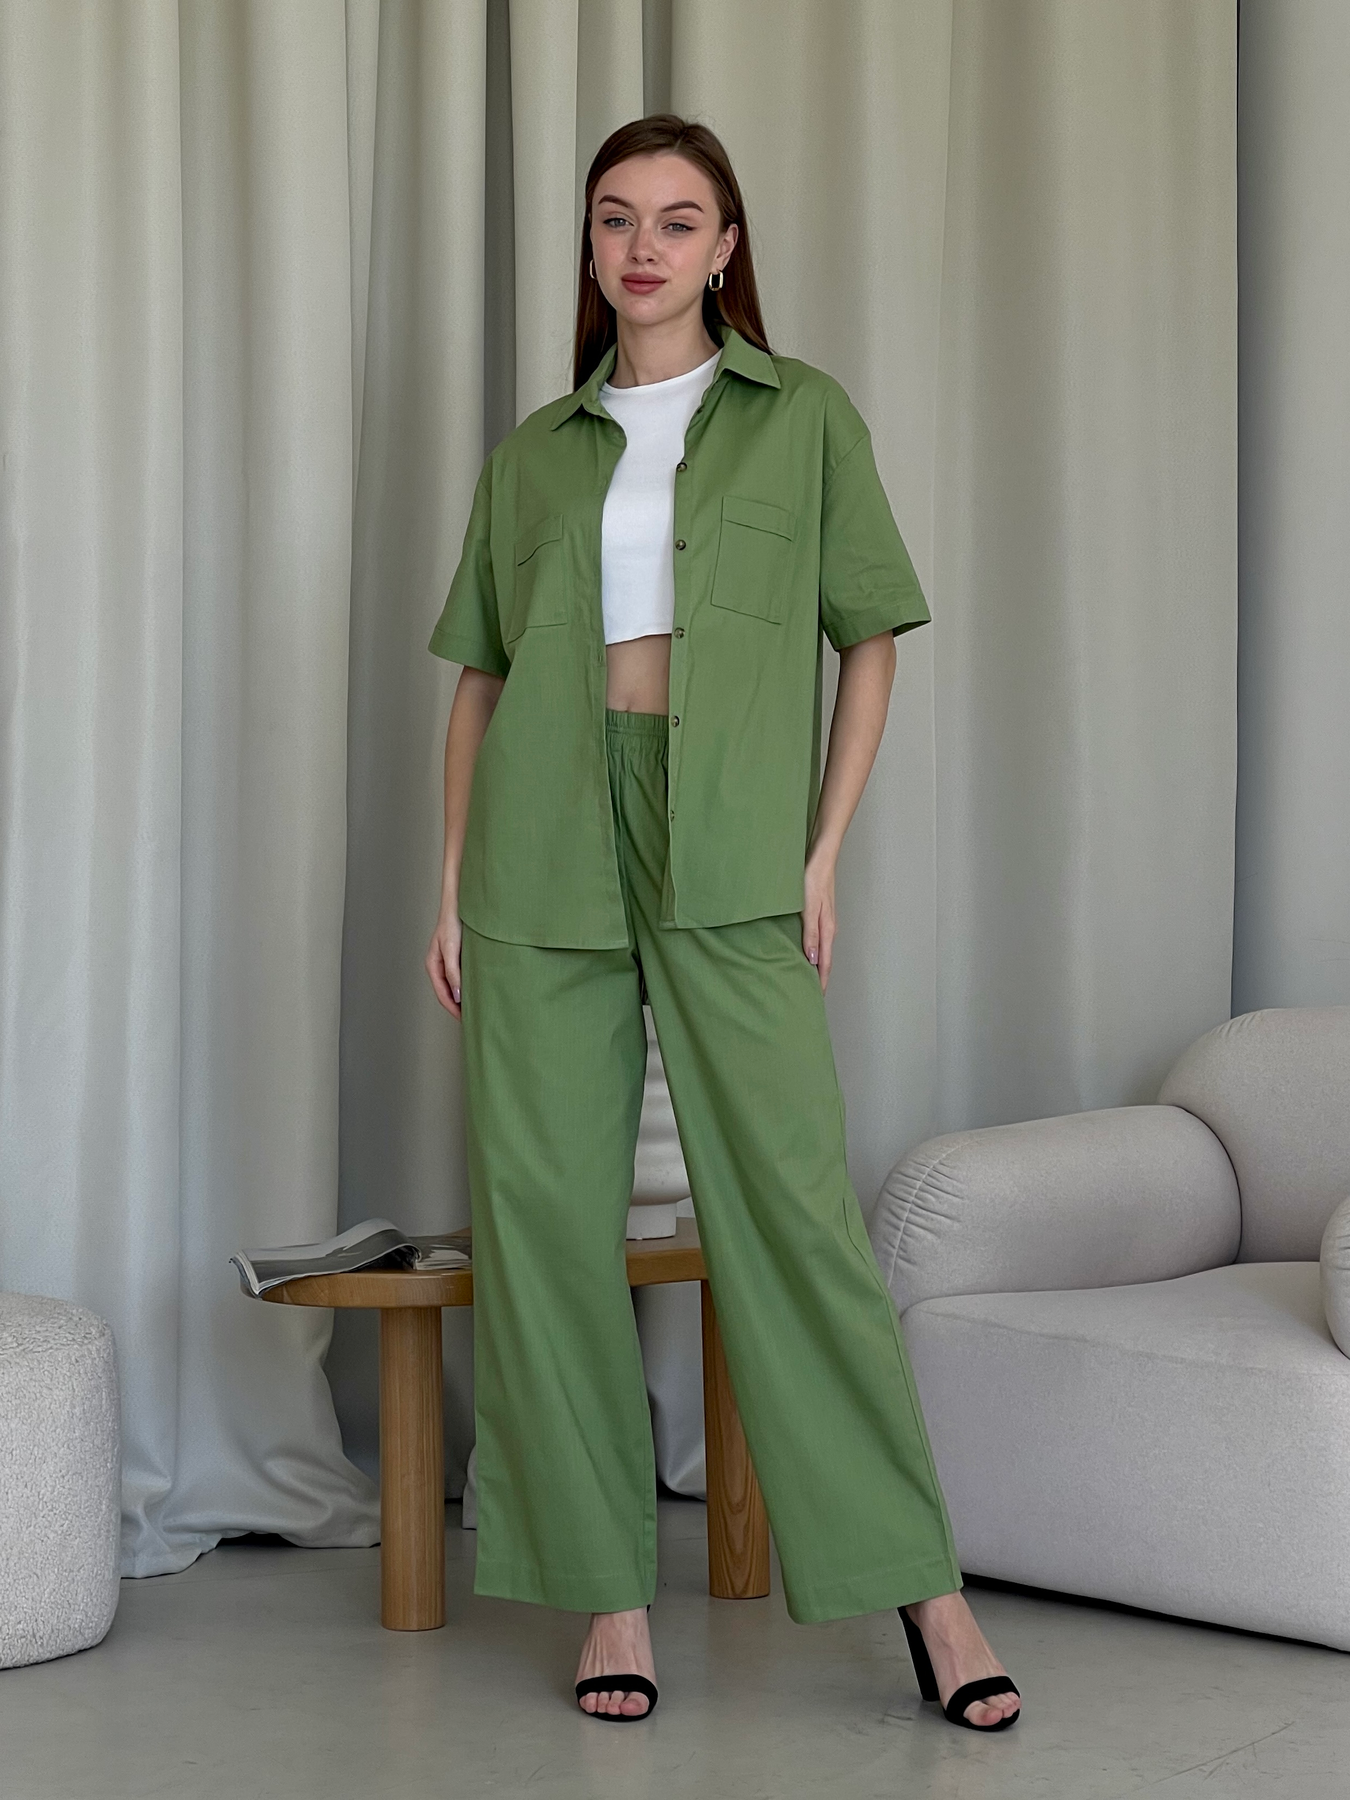 Купить Льняной костюм с штанами палаццо и рубашкой зеленый Лорен 100001205 размер 46-48 (L-XL) в интернет-магазине